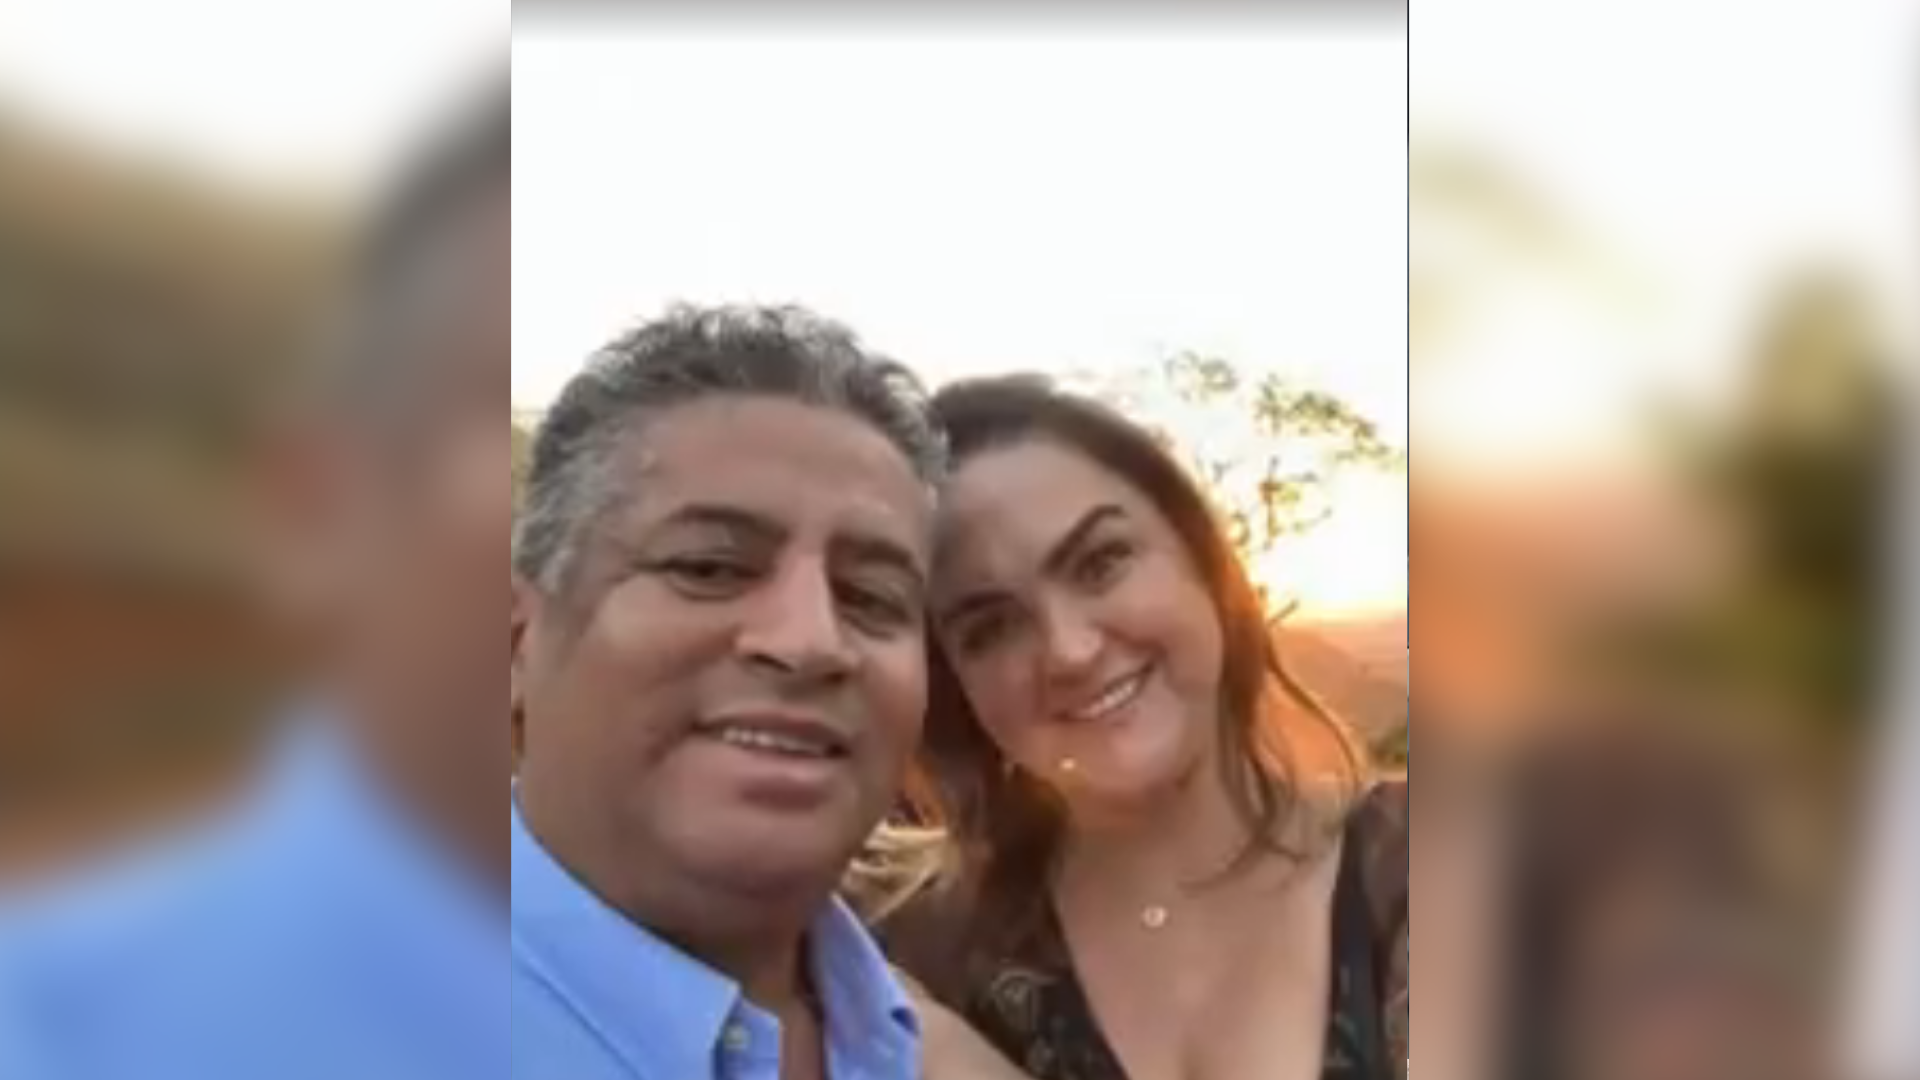 Danilo Campagnollo, advogado de Julianna Ritter e Gleidson Lopes, detalhou como o nome do casal foi envolvido no caso investigado pela Polícia Civil de São Paulo